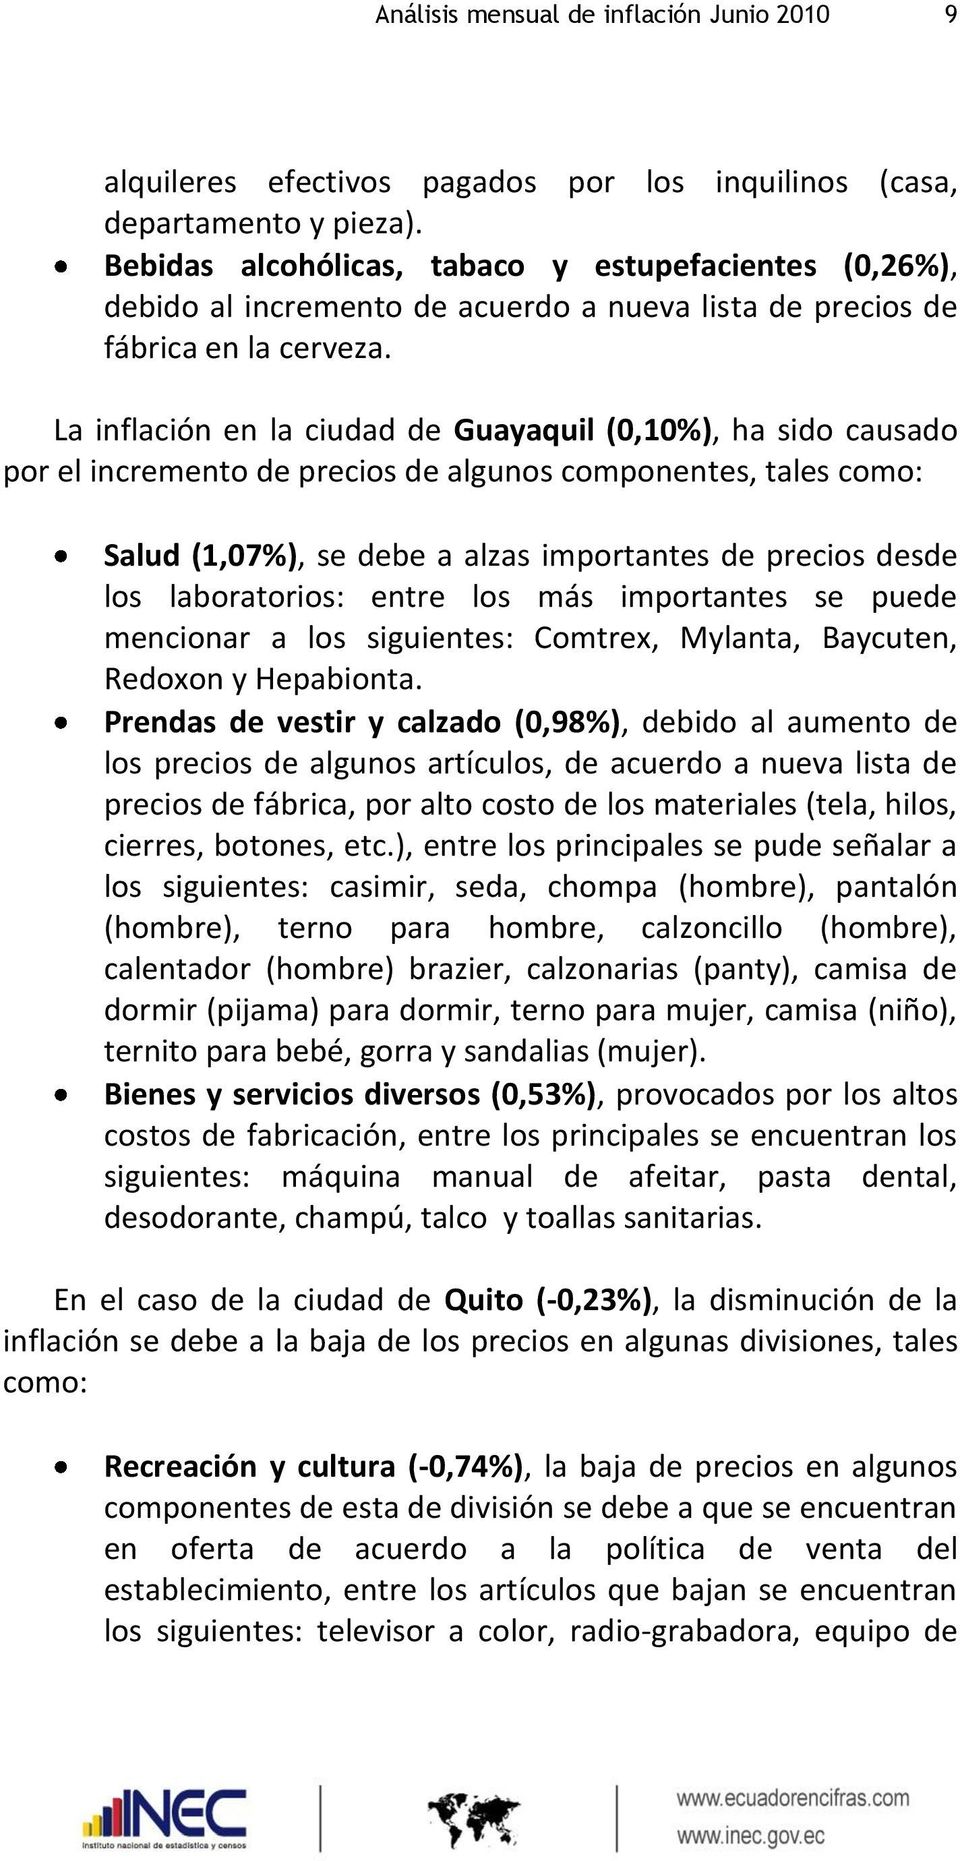 La inflación en la ciudad de Guayaquil (0,10%), ha sido causado por el incremento de precios de algunos componentes, tales como: Salud (1,07%), se debe a alzas importantes de precios desde los